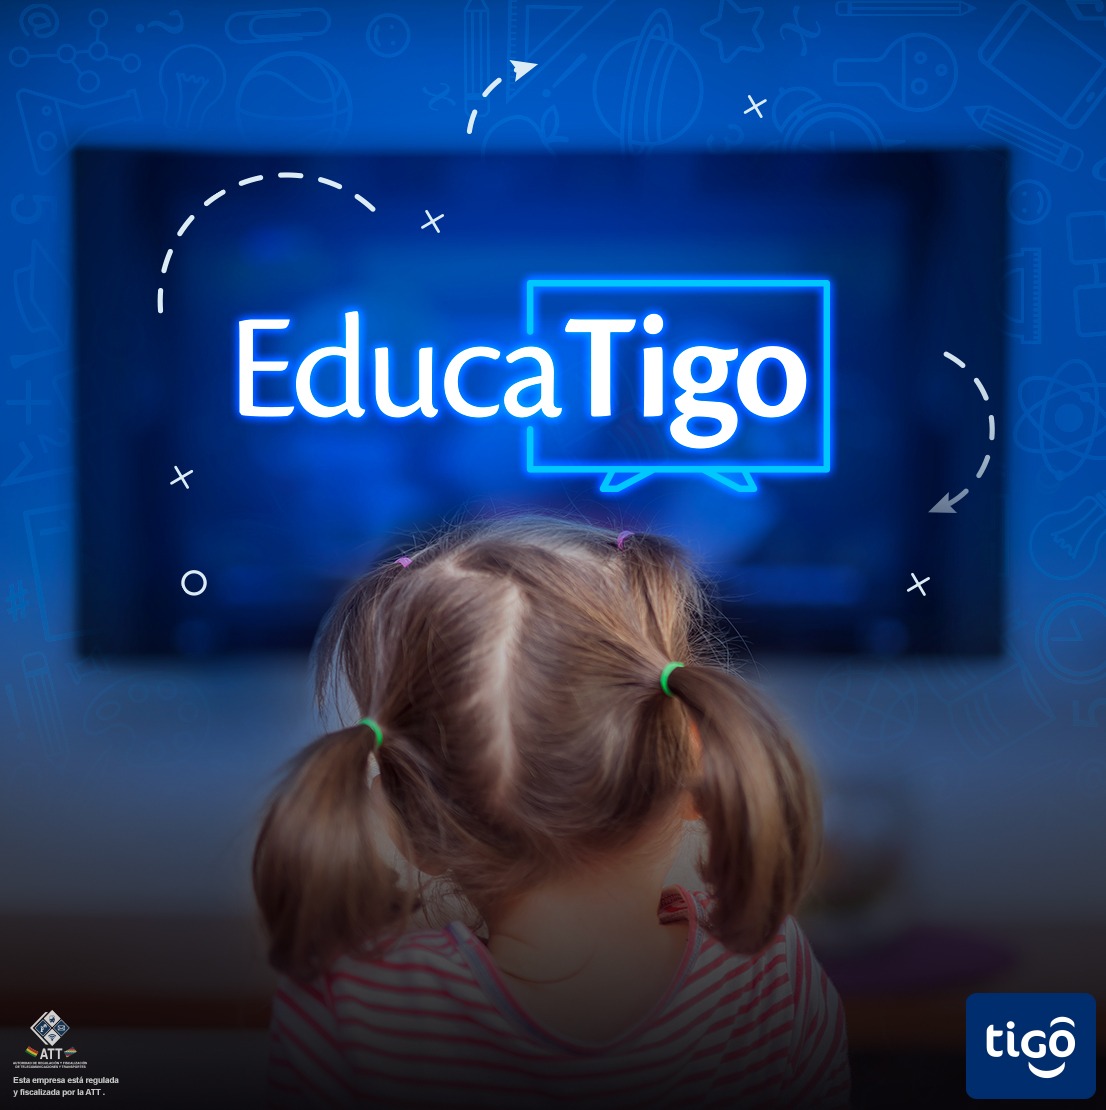 Educatigo, el espacio que apoyará la formación educativa desde la TV